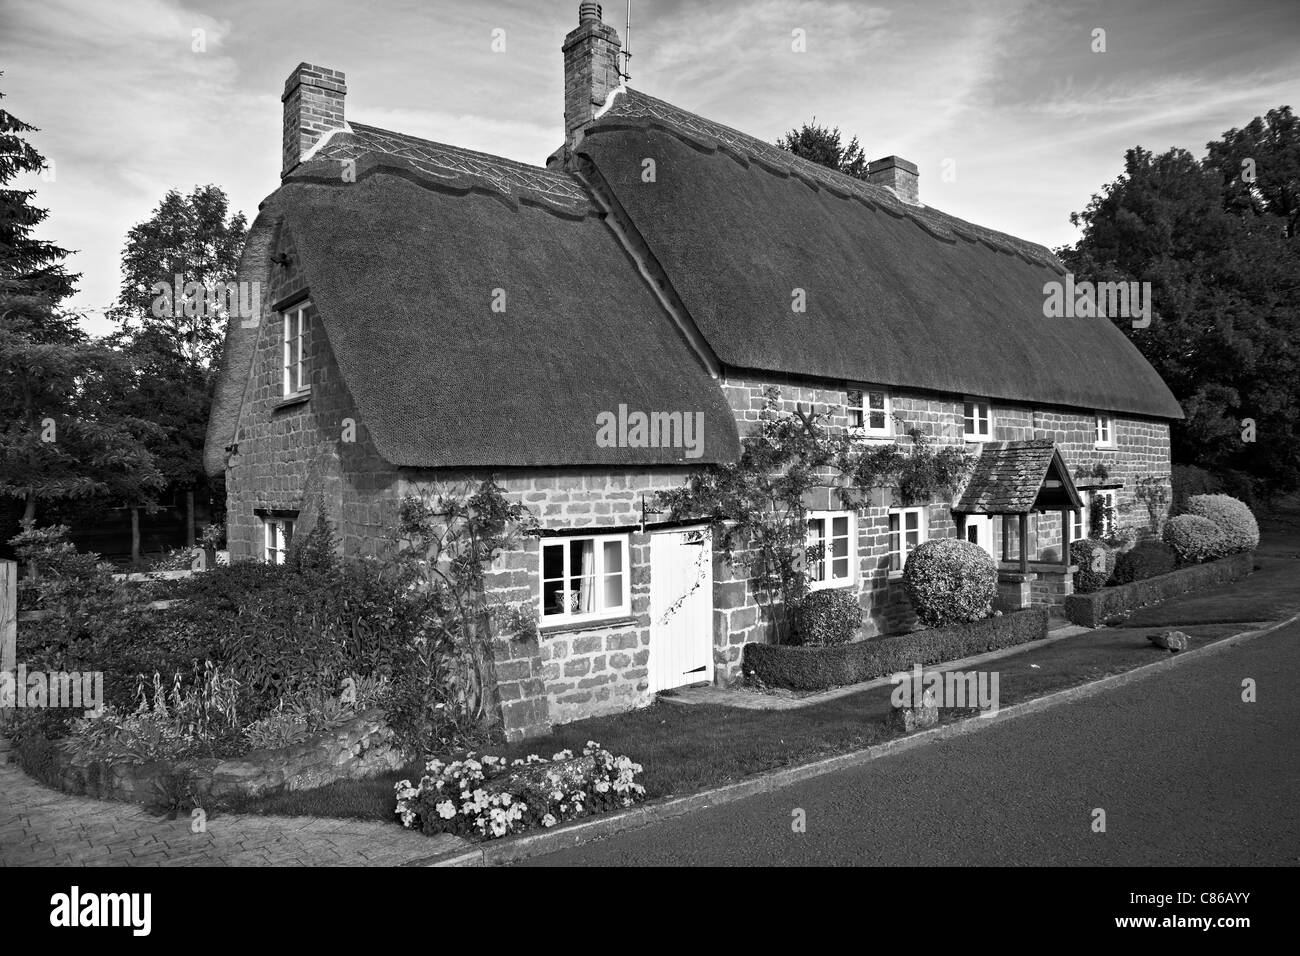 Cottage de chaume UK.pittoresque cottage traditionnel de chaume extérieur dans un cadre rural anglais.Wroxton St Mary Banbury Oxfordshire Angleterre Banque D'Images